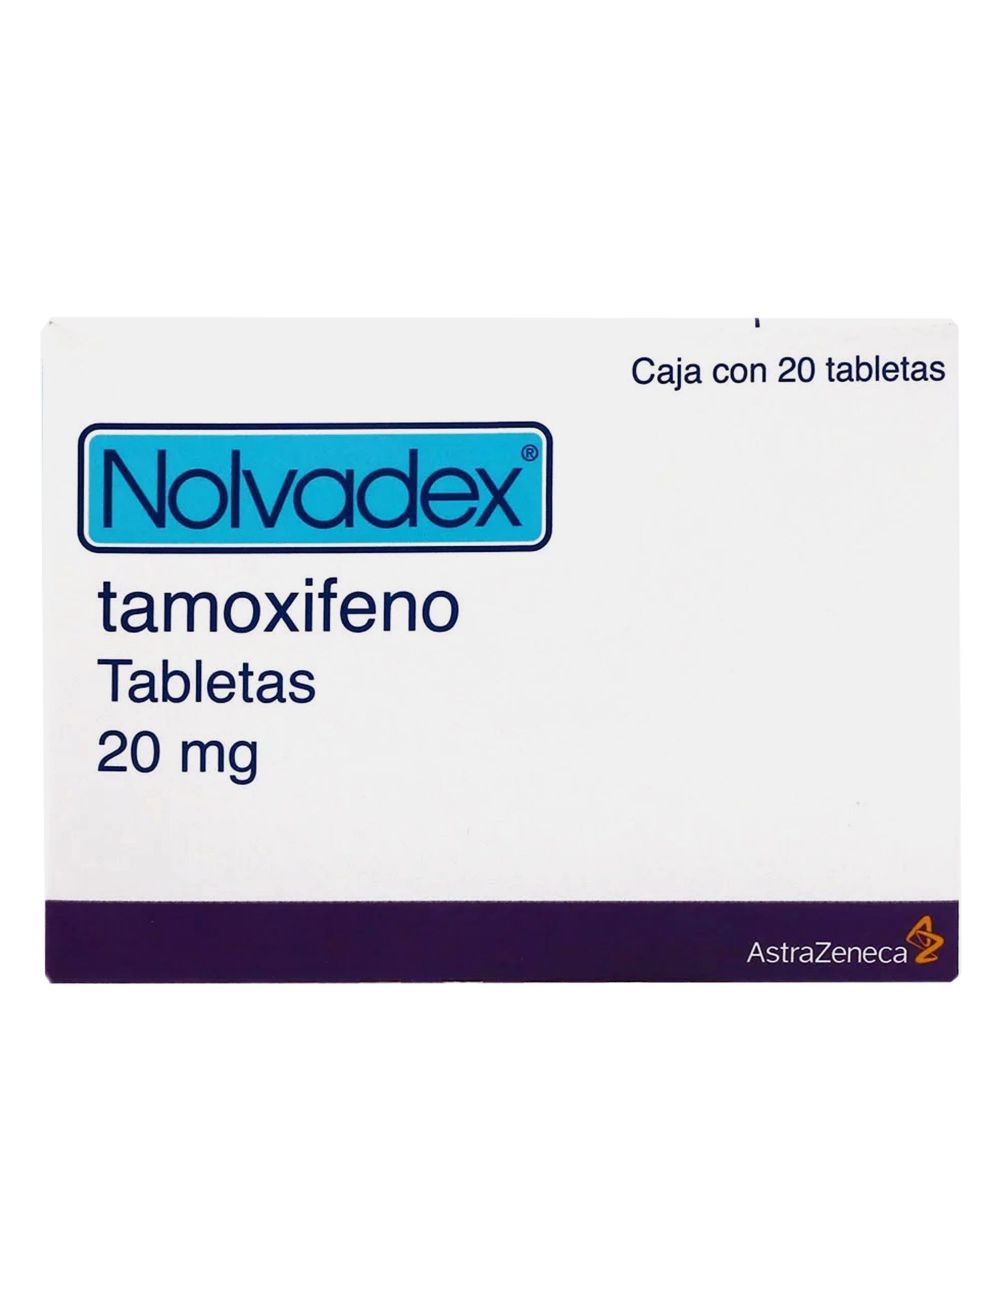 Nolvadex Tamoxifeno - 20 Tabs de 20 mg c/u. AstraZeneca - Es un medicamento no esteroide derivado del trifeniletileno que ejerce un complejo espectro de efectos farmacológicos antagonistas y agonistas de los estrógenos en distintos tejidos